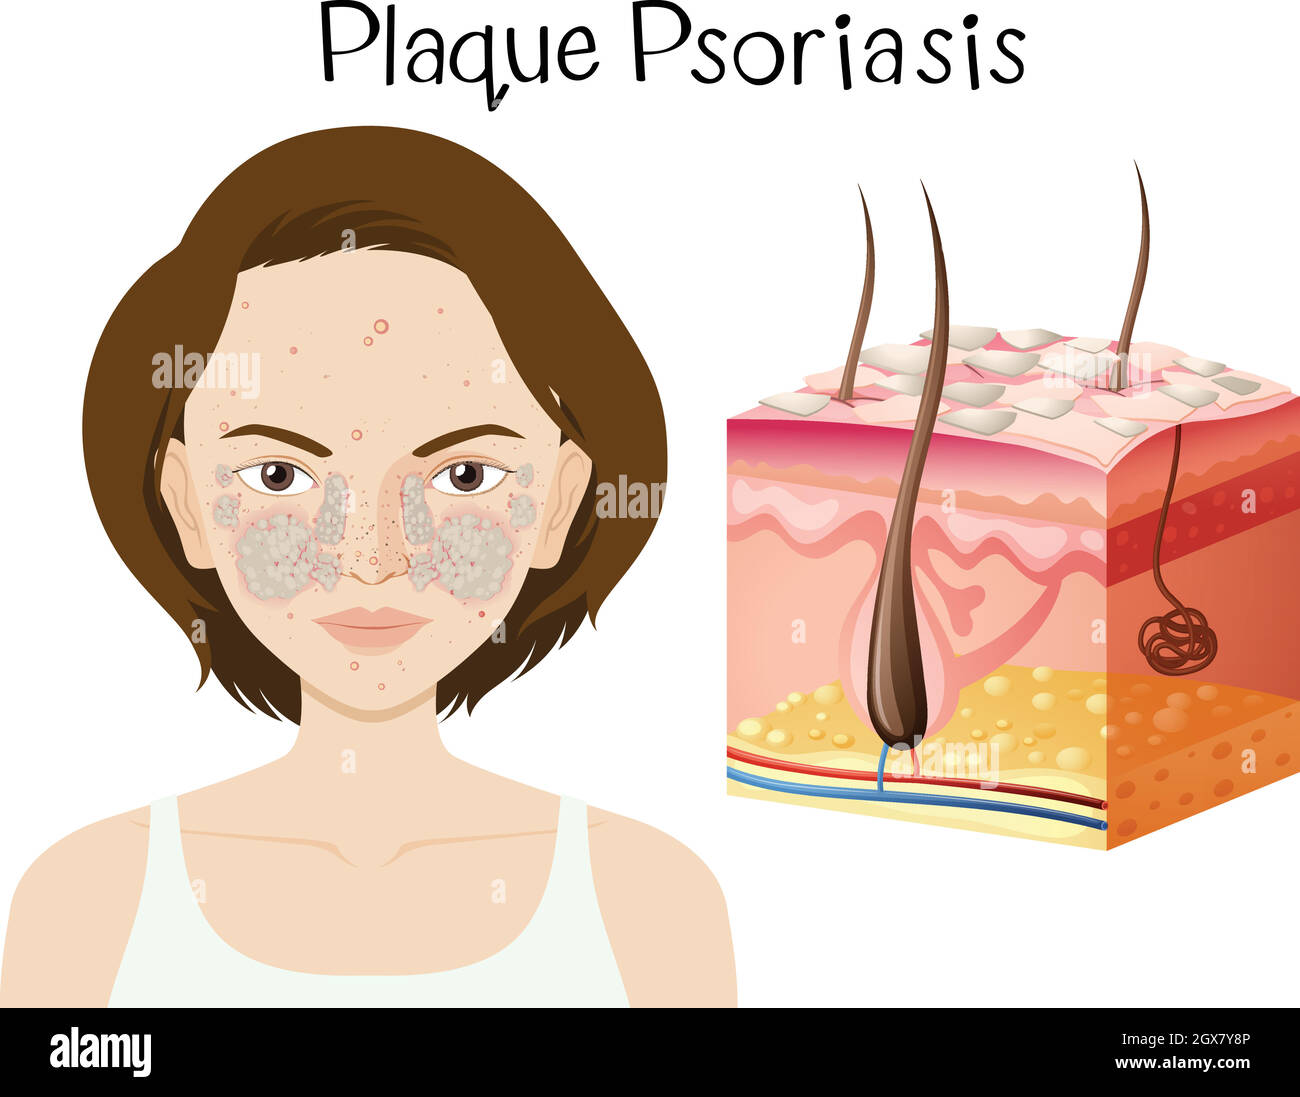 Human Anatomy of Plaque Psoriasis Stock Vector